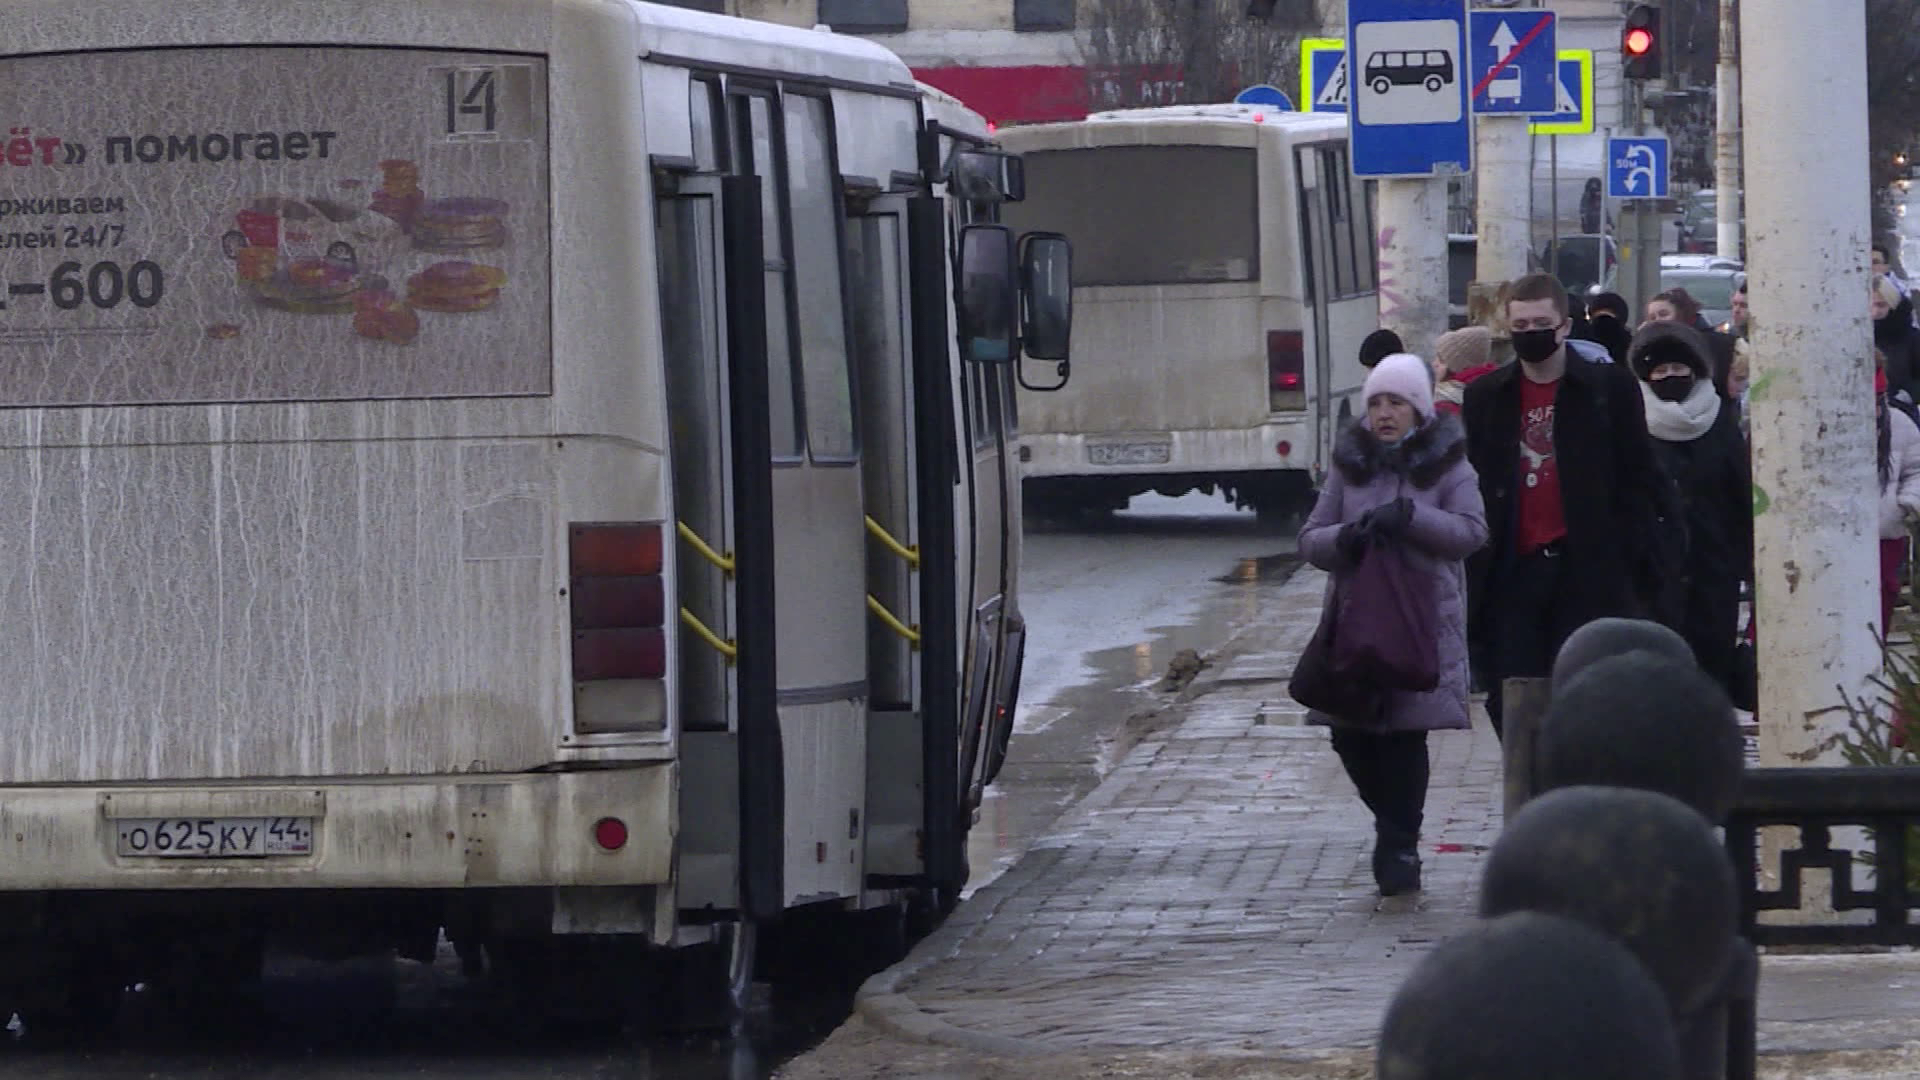 Поднять плату за проезд в общественном транспорте попросили перевозчики Костромы